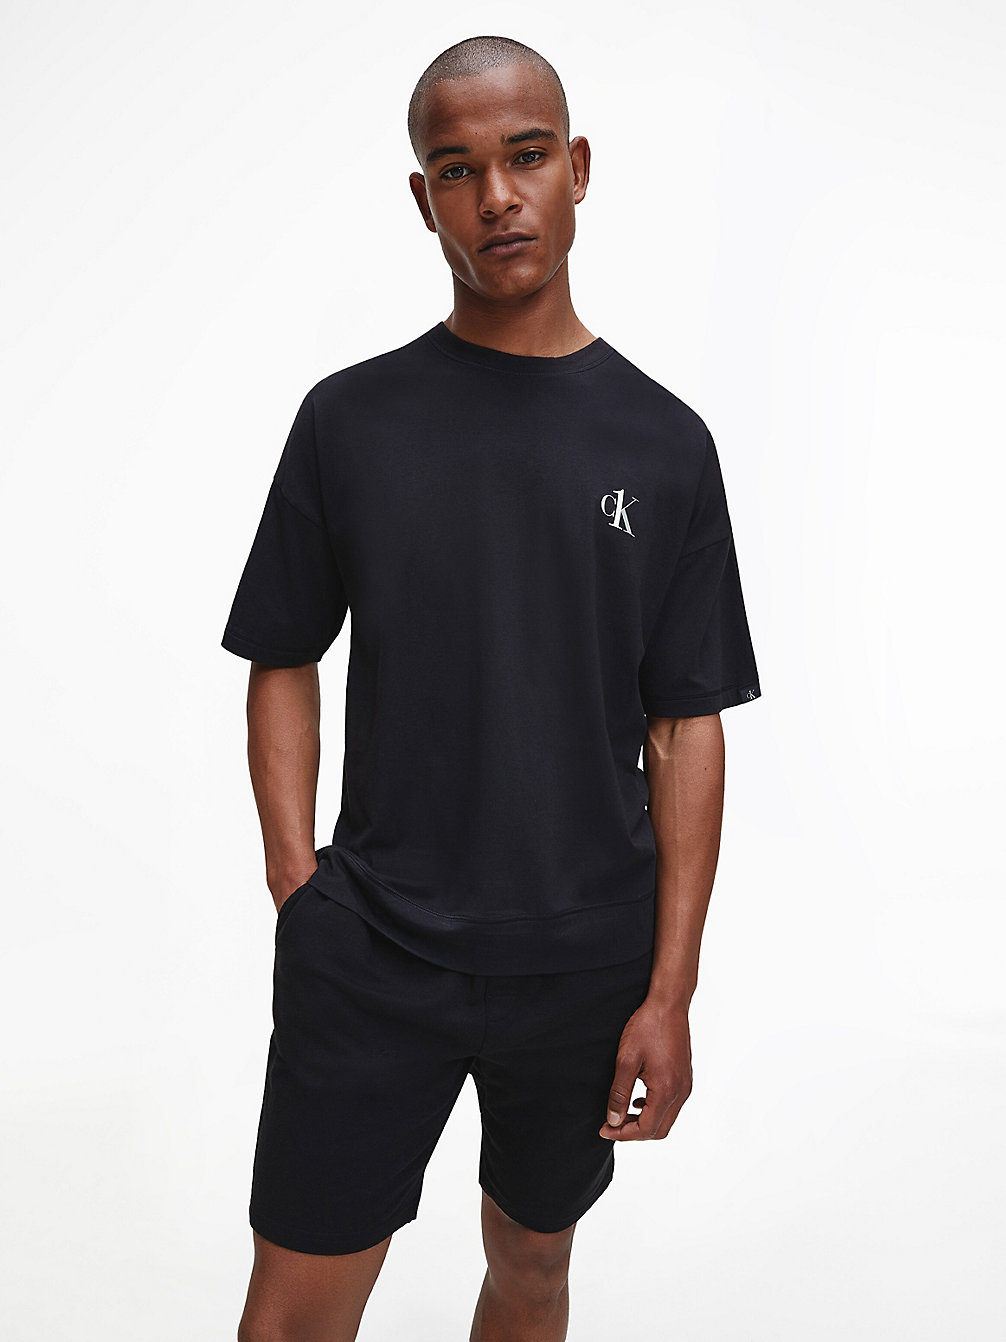 T-Shirt D'intérieur - CK One > BLACK > undefined hommes > Calvin Klein